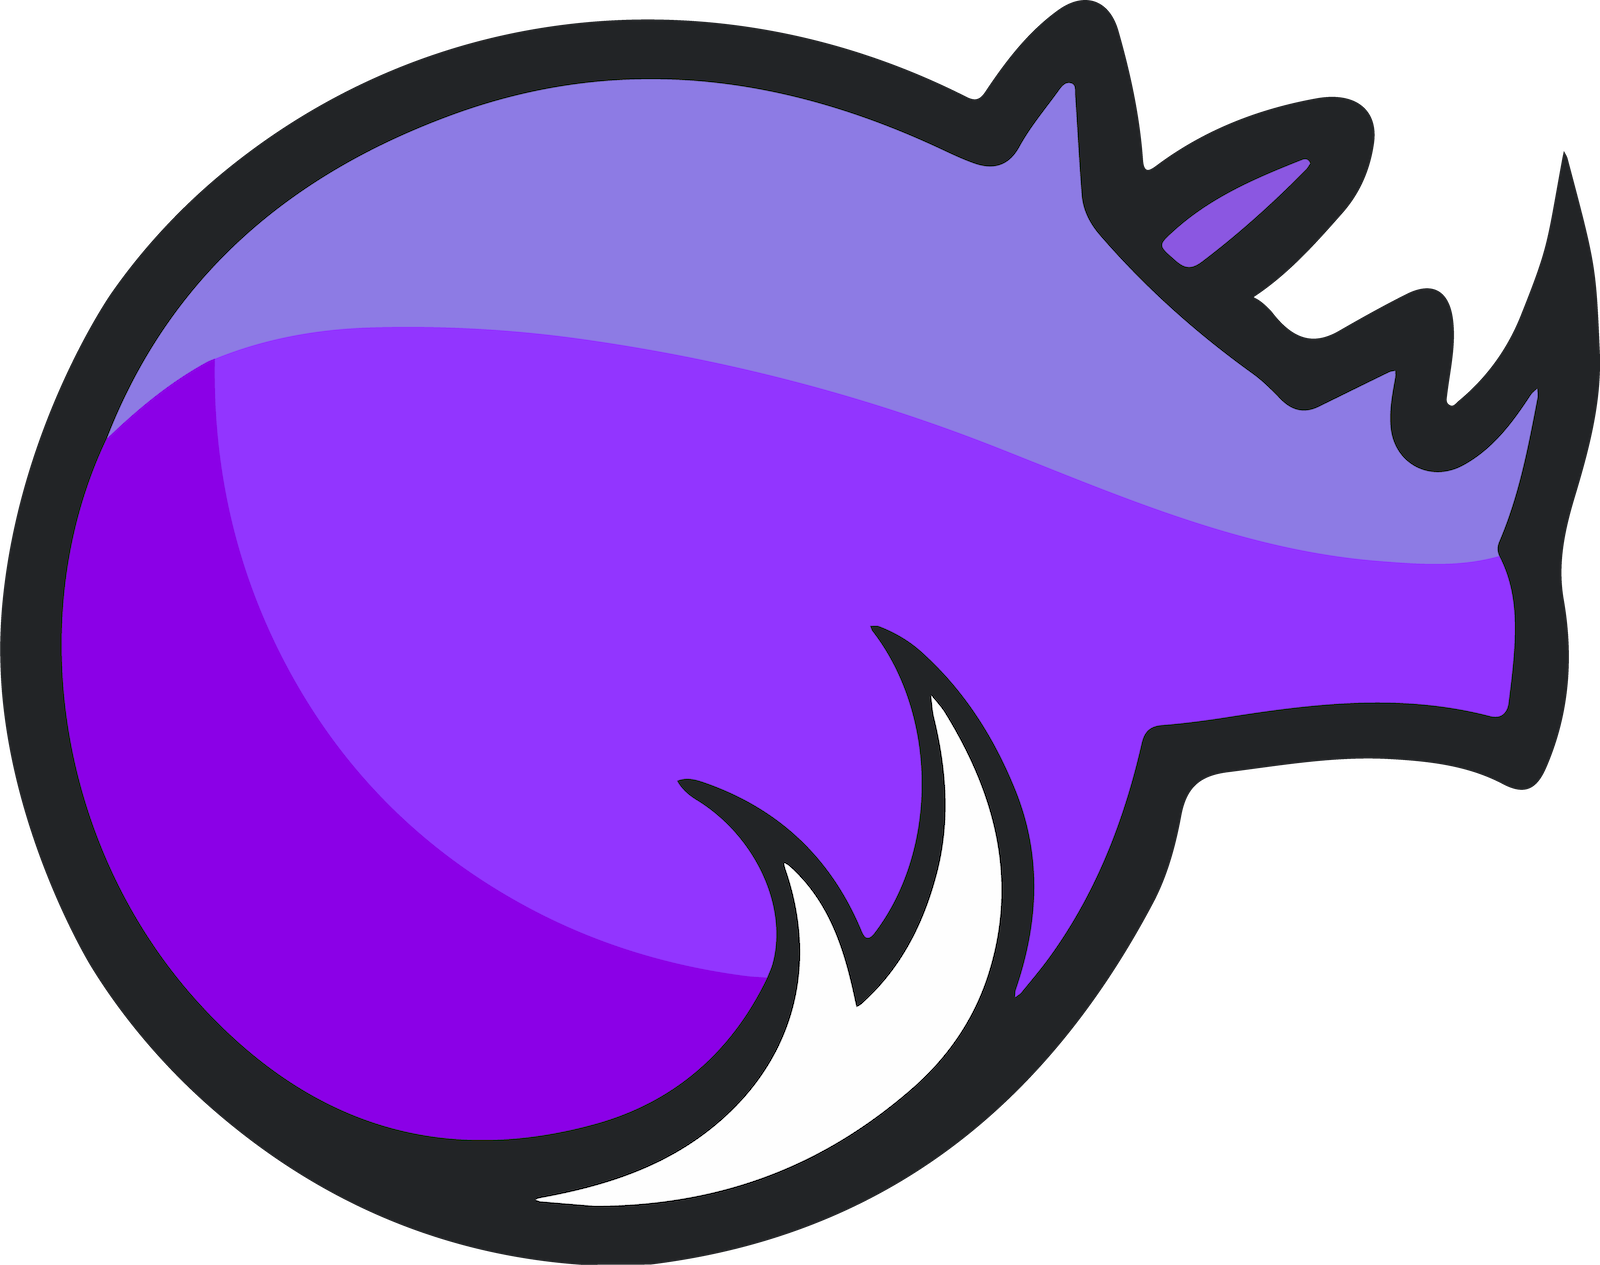 Rhino linux logo